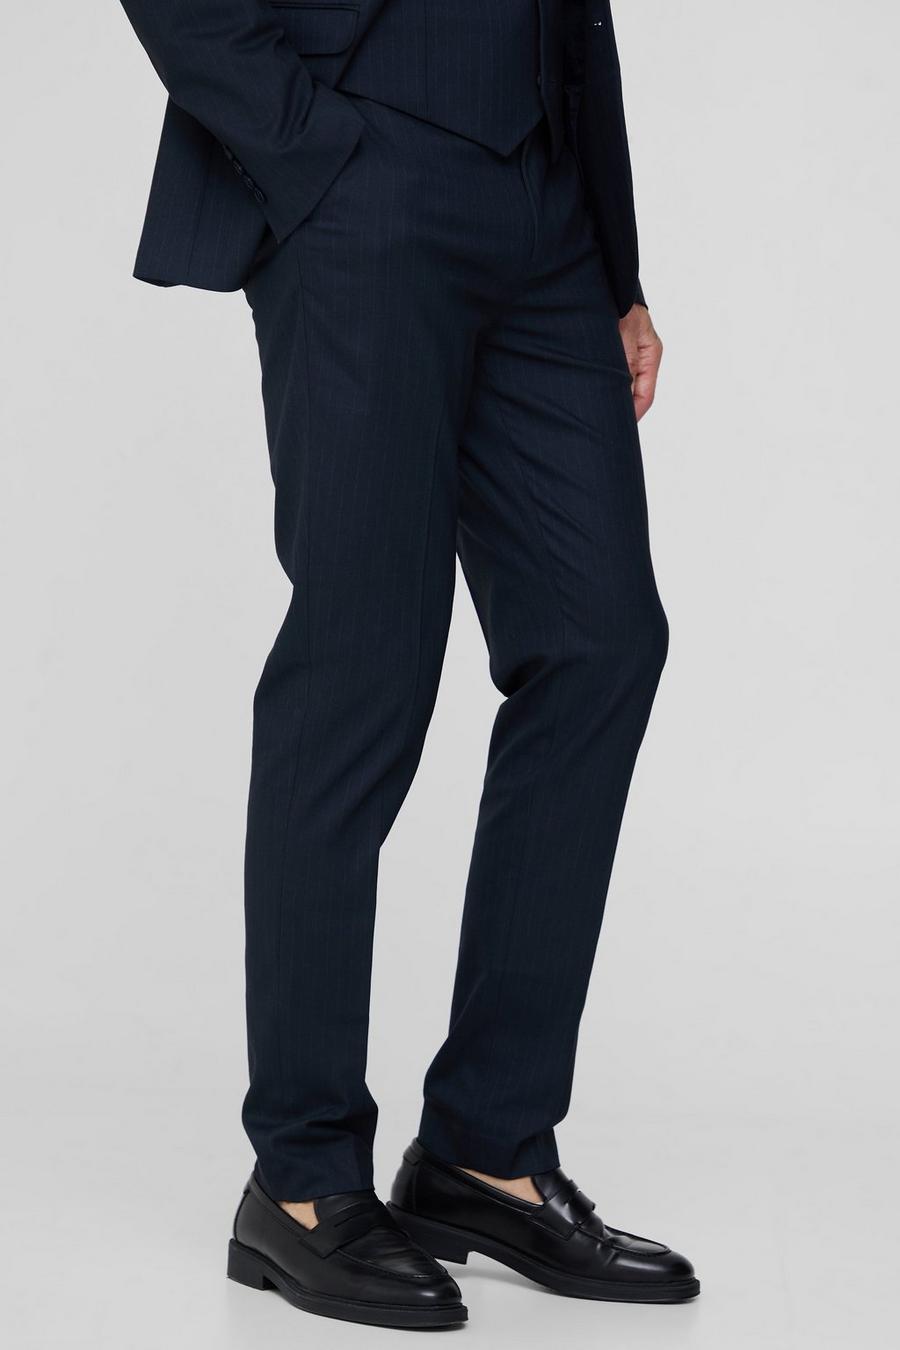 Pantalón Tall de traje ajustado con raya diplomática azul marino, Navy